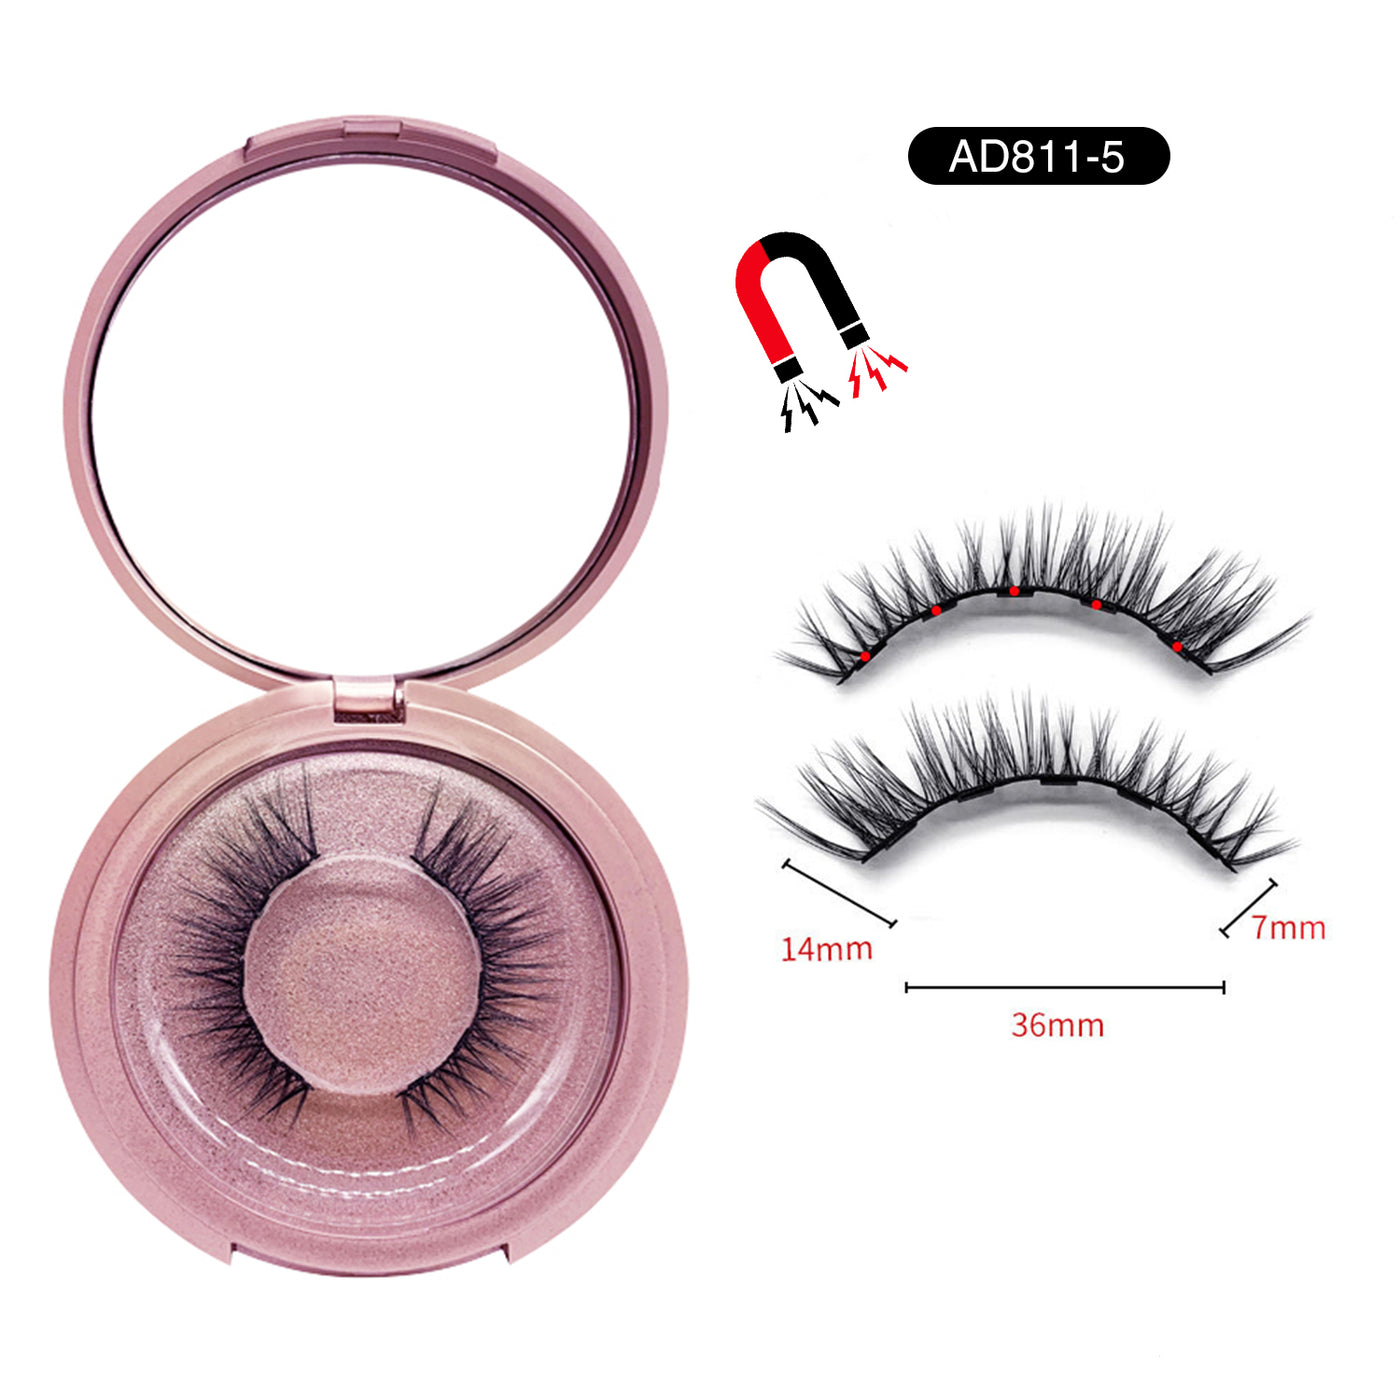 Magnetic Eyelashes with Eyeliner Kit AD811-5 (4603673149528)